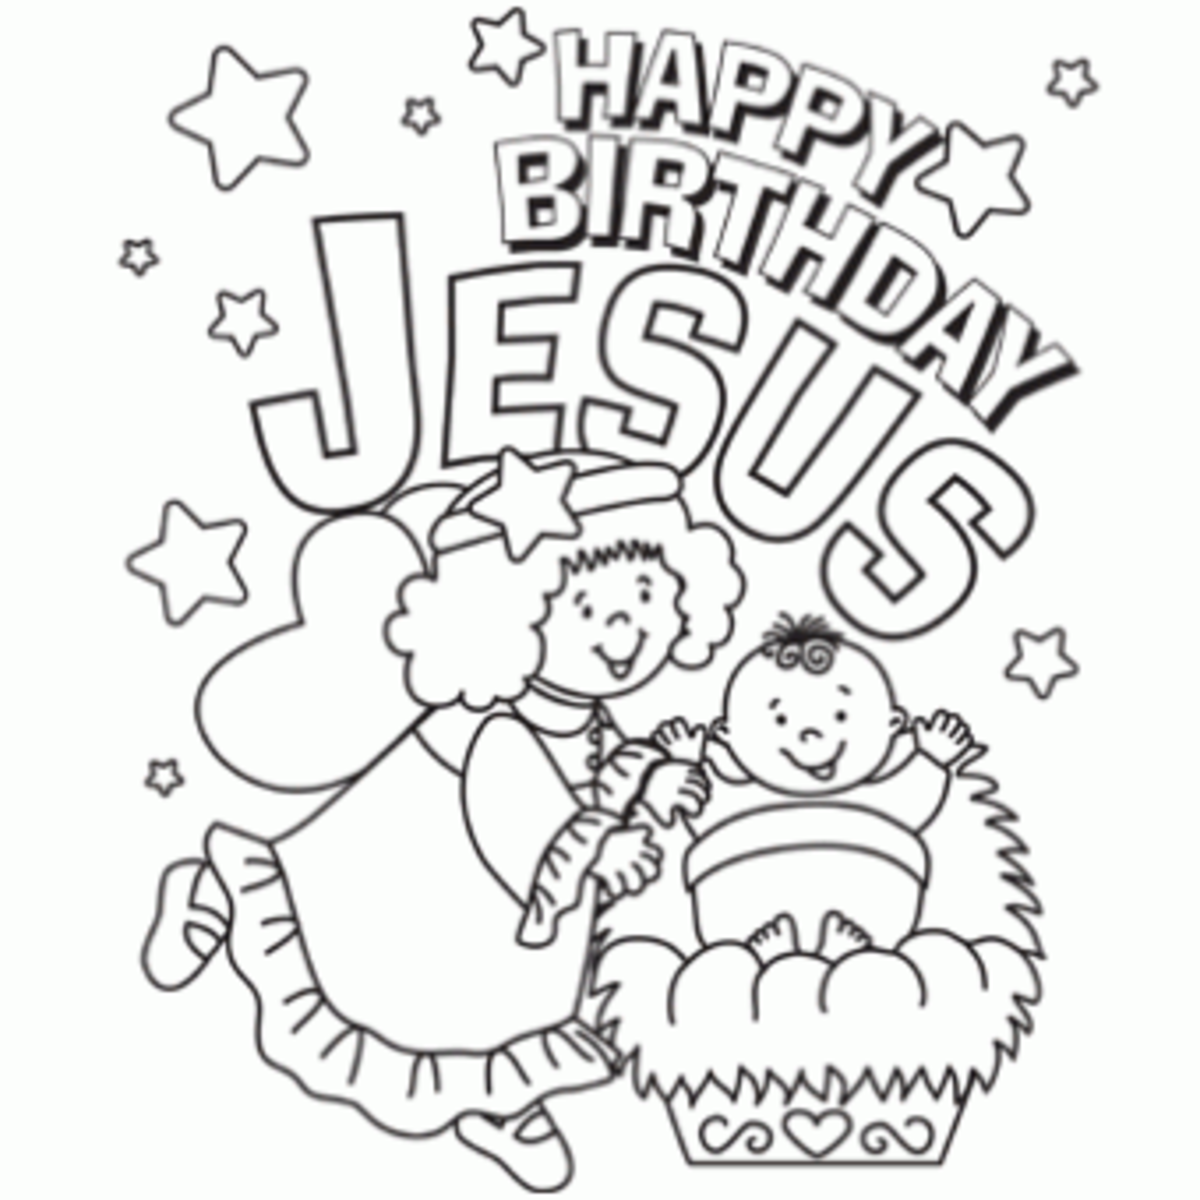 clipart name happy birthday jesus - photo #12